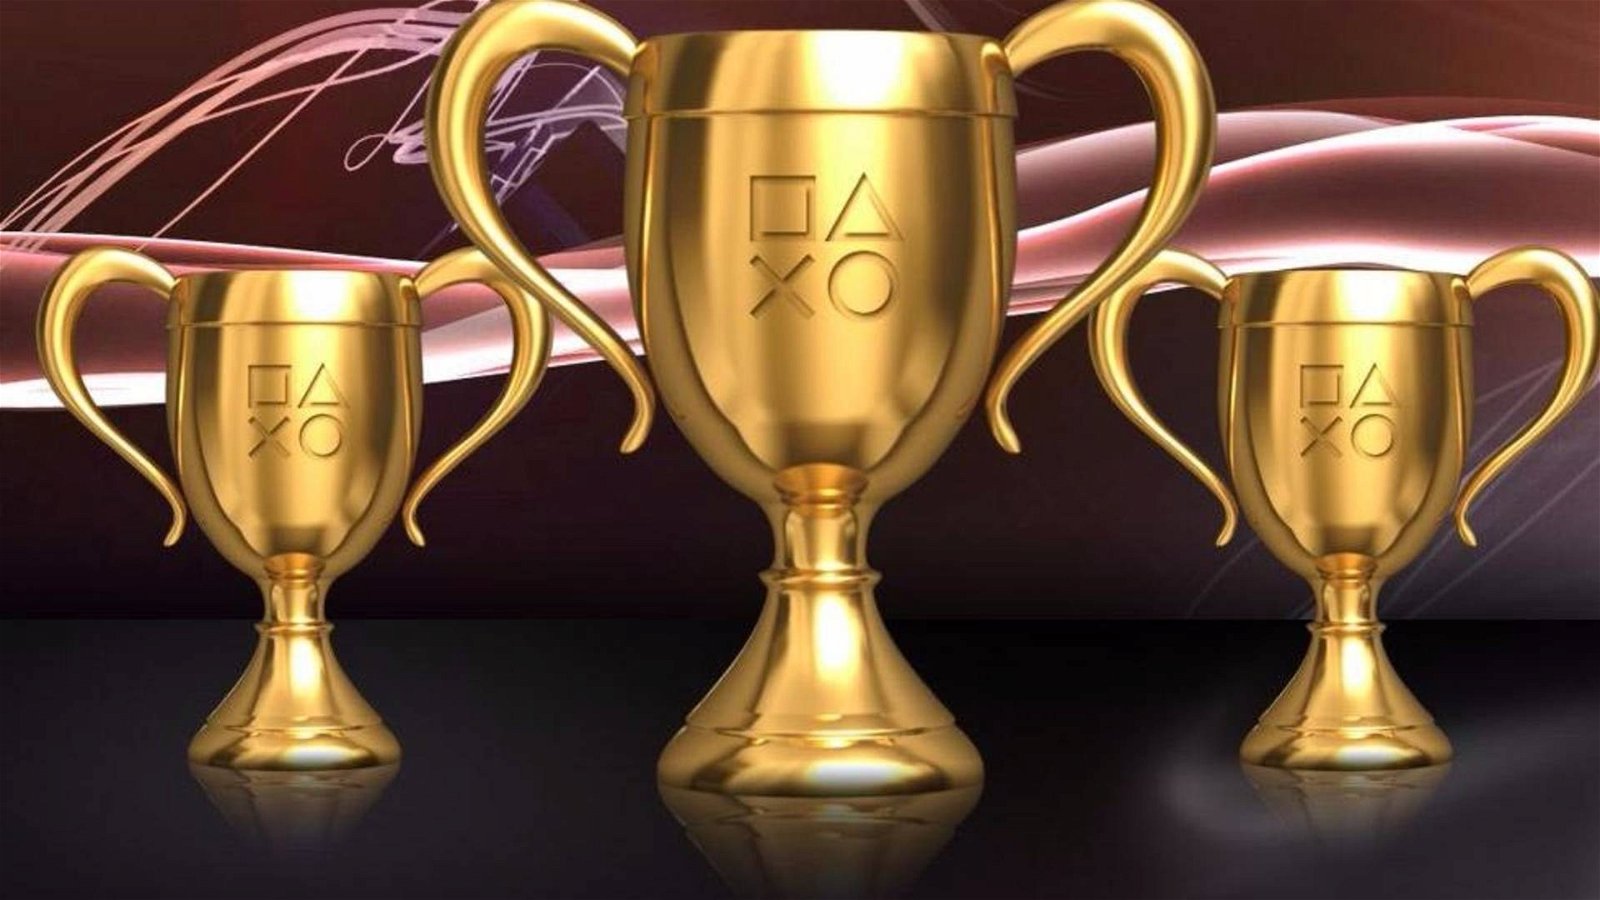 Immagine di RDR2, God of War, Assassin's Creed Odyssey: i dati dei trofei svelano quanti finiscono veramente i giochi